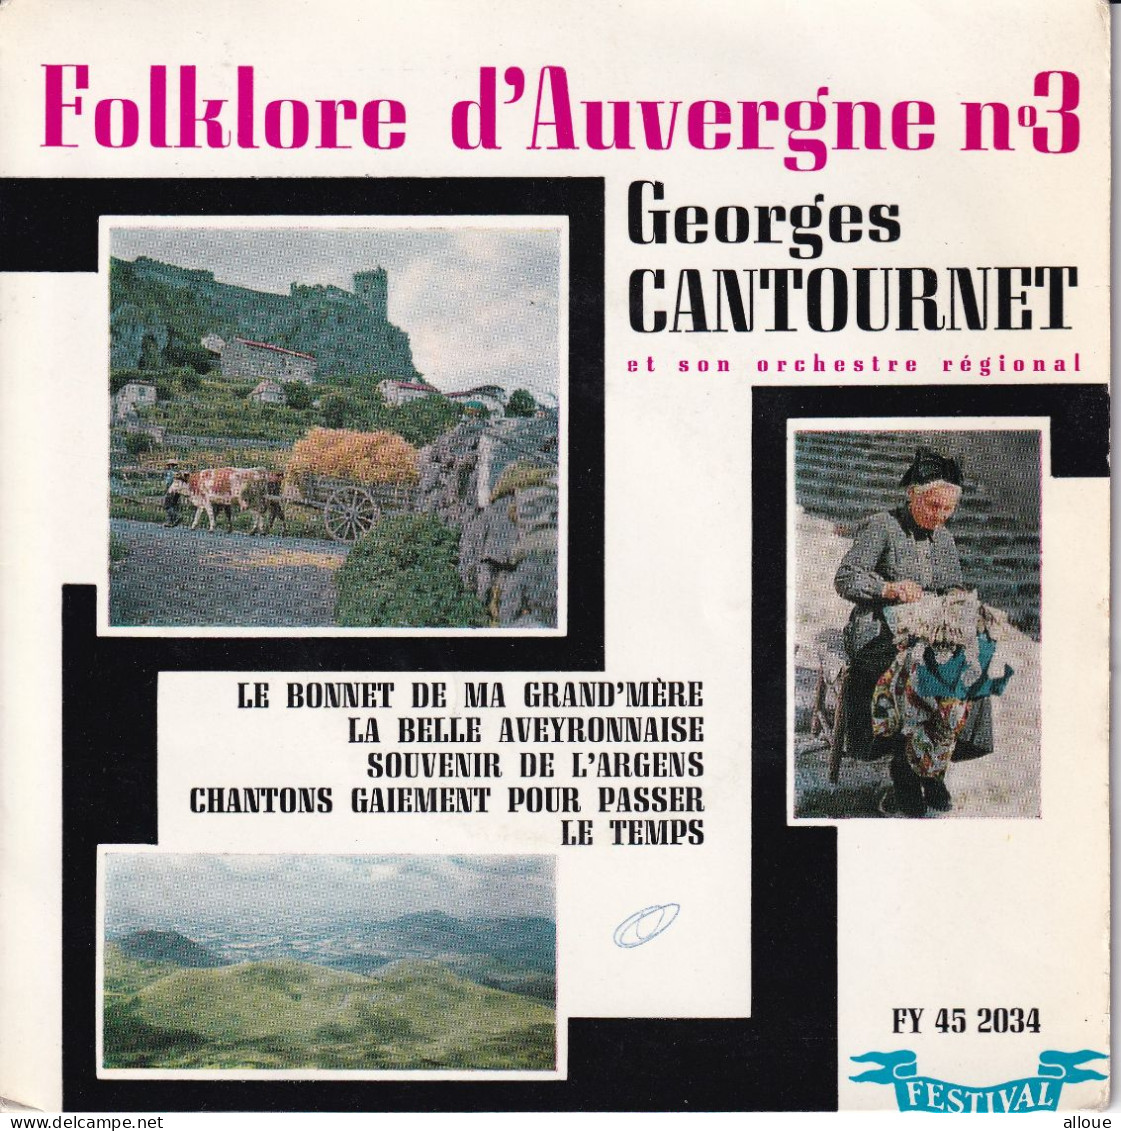 GEORGES CANTOURNET (FOLKLORE D'AUVERGNE N° 3) - EP FR  - LE BONNET DE MA GRAND'MERE + 3 - Música Del Mundo